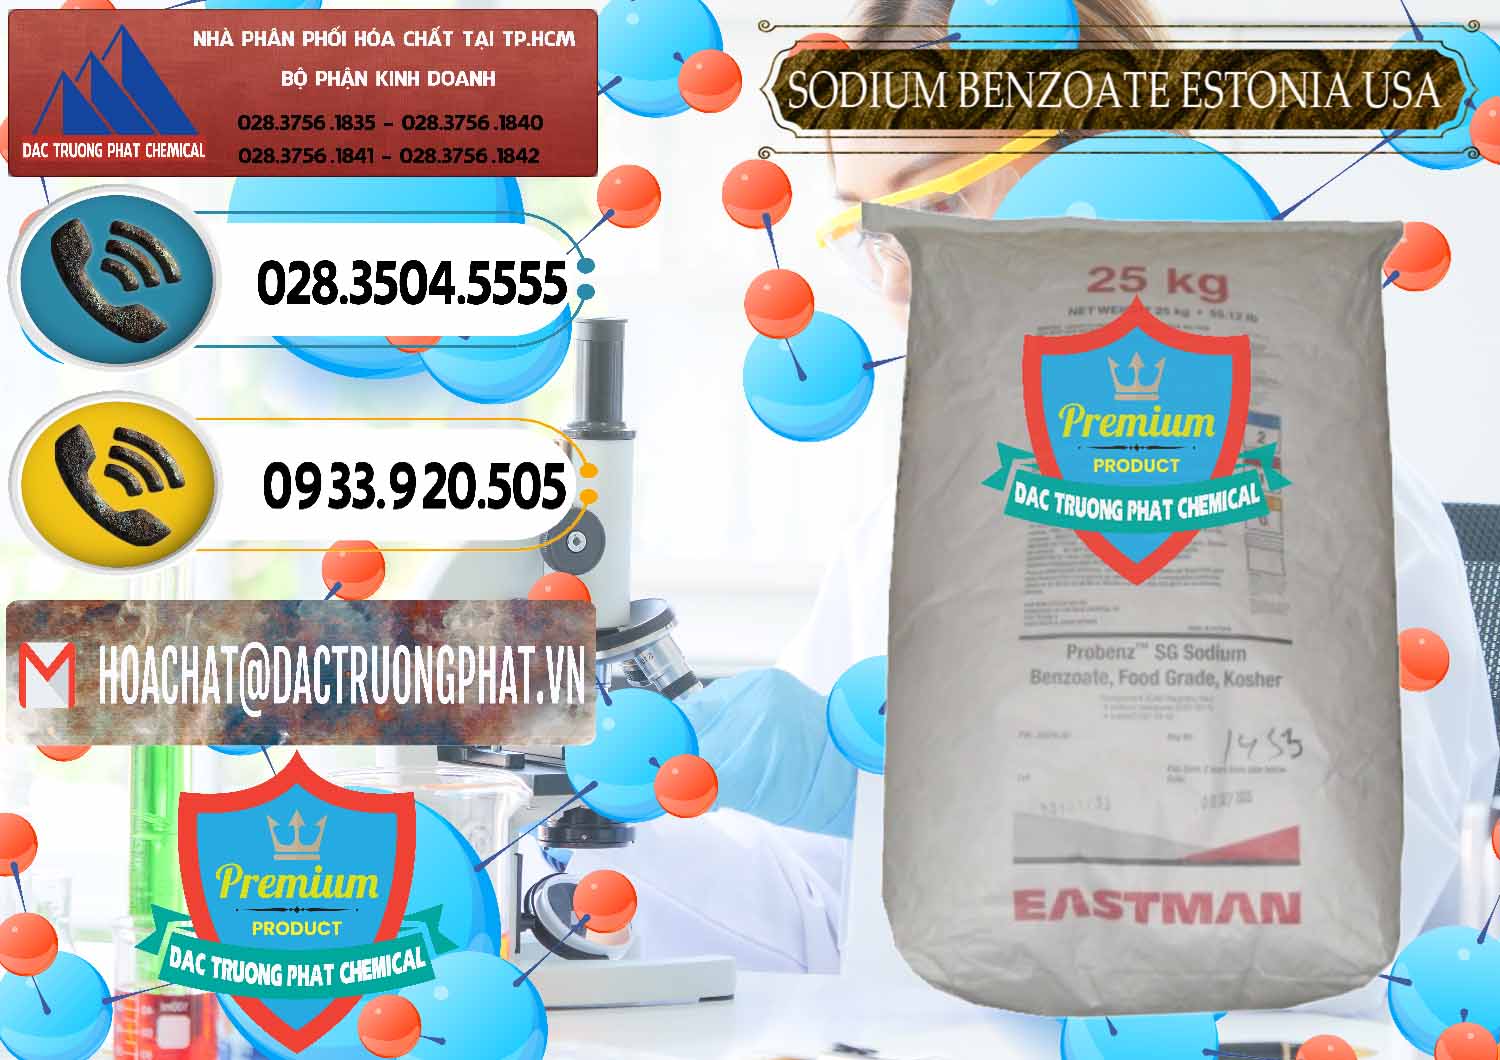 Cung cấp - bán Sodium Benzoate - Mốc Bột Estonia Mỹ USA - 0468 - Công ty bán _ cung cấp hóa chất tại TP.HCM - hoachatdetnhuom.vn